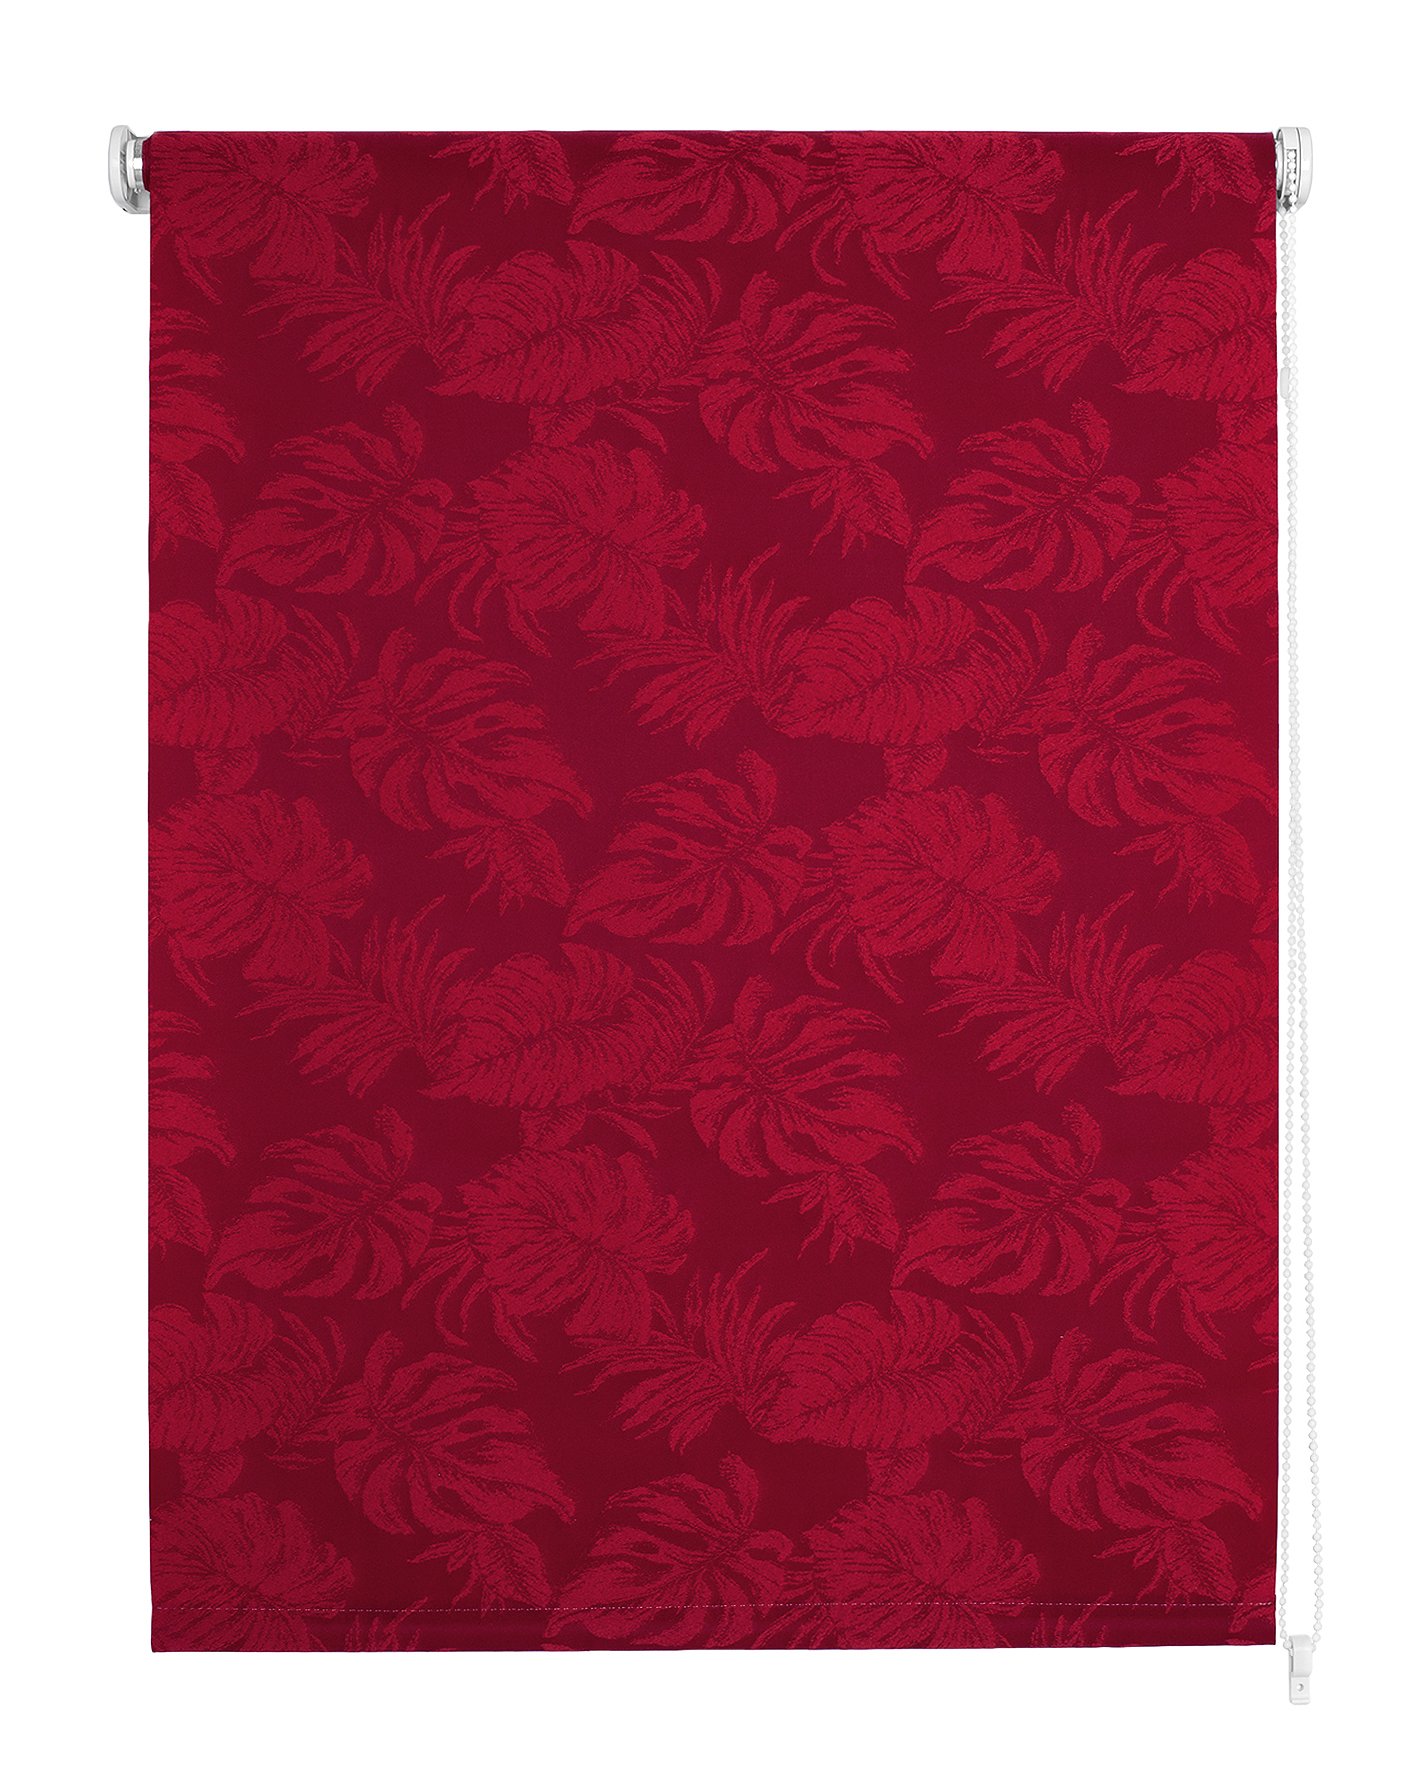 Klasikinė ritininė užuolaida OSLO, raudonos sp.,120 x 170 cm, 100 % poliesteris